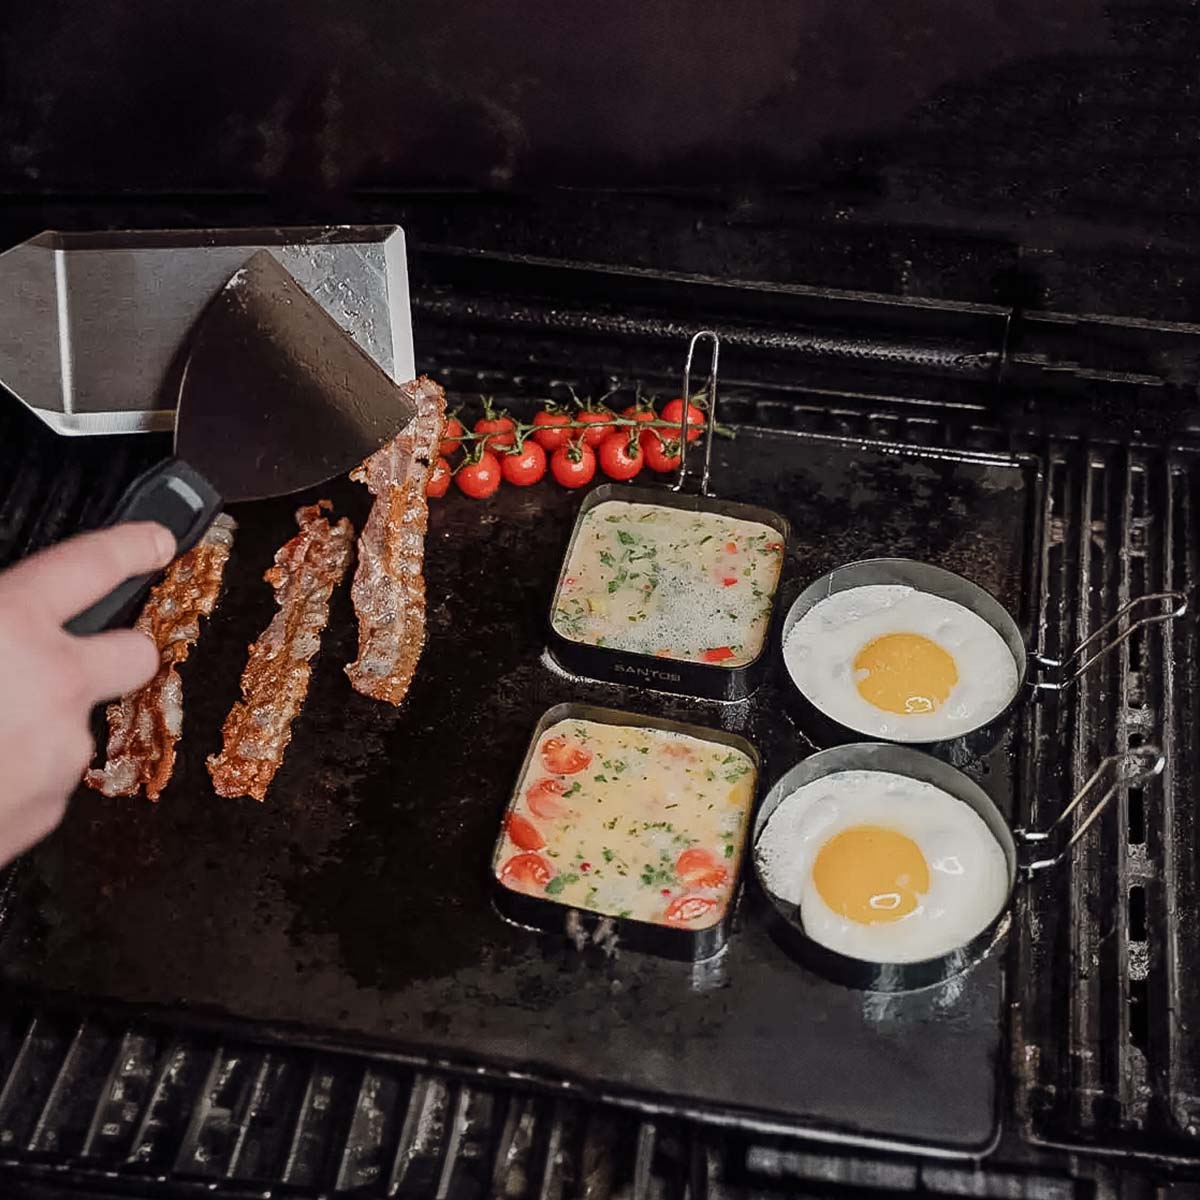 SANTOS Grillspachtel & Spiegeleiformen - American Breakfast - 6-teiliges BBQ Frühstücks-Set - für einen schnellen & leckeren Start in den Tag